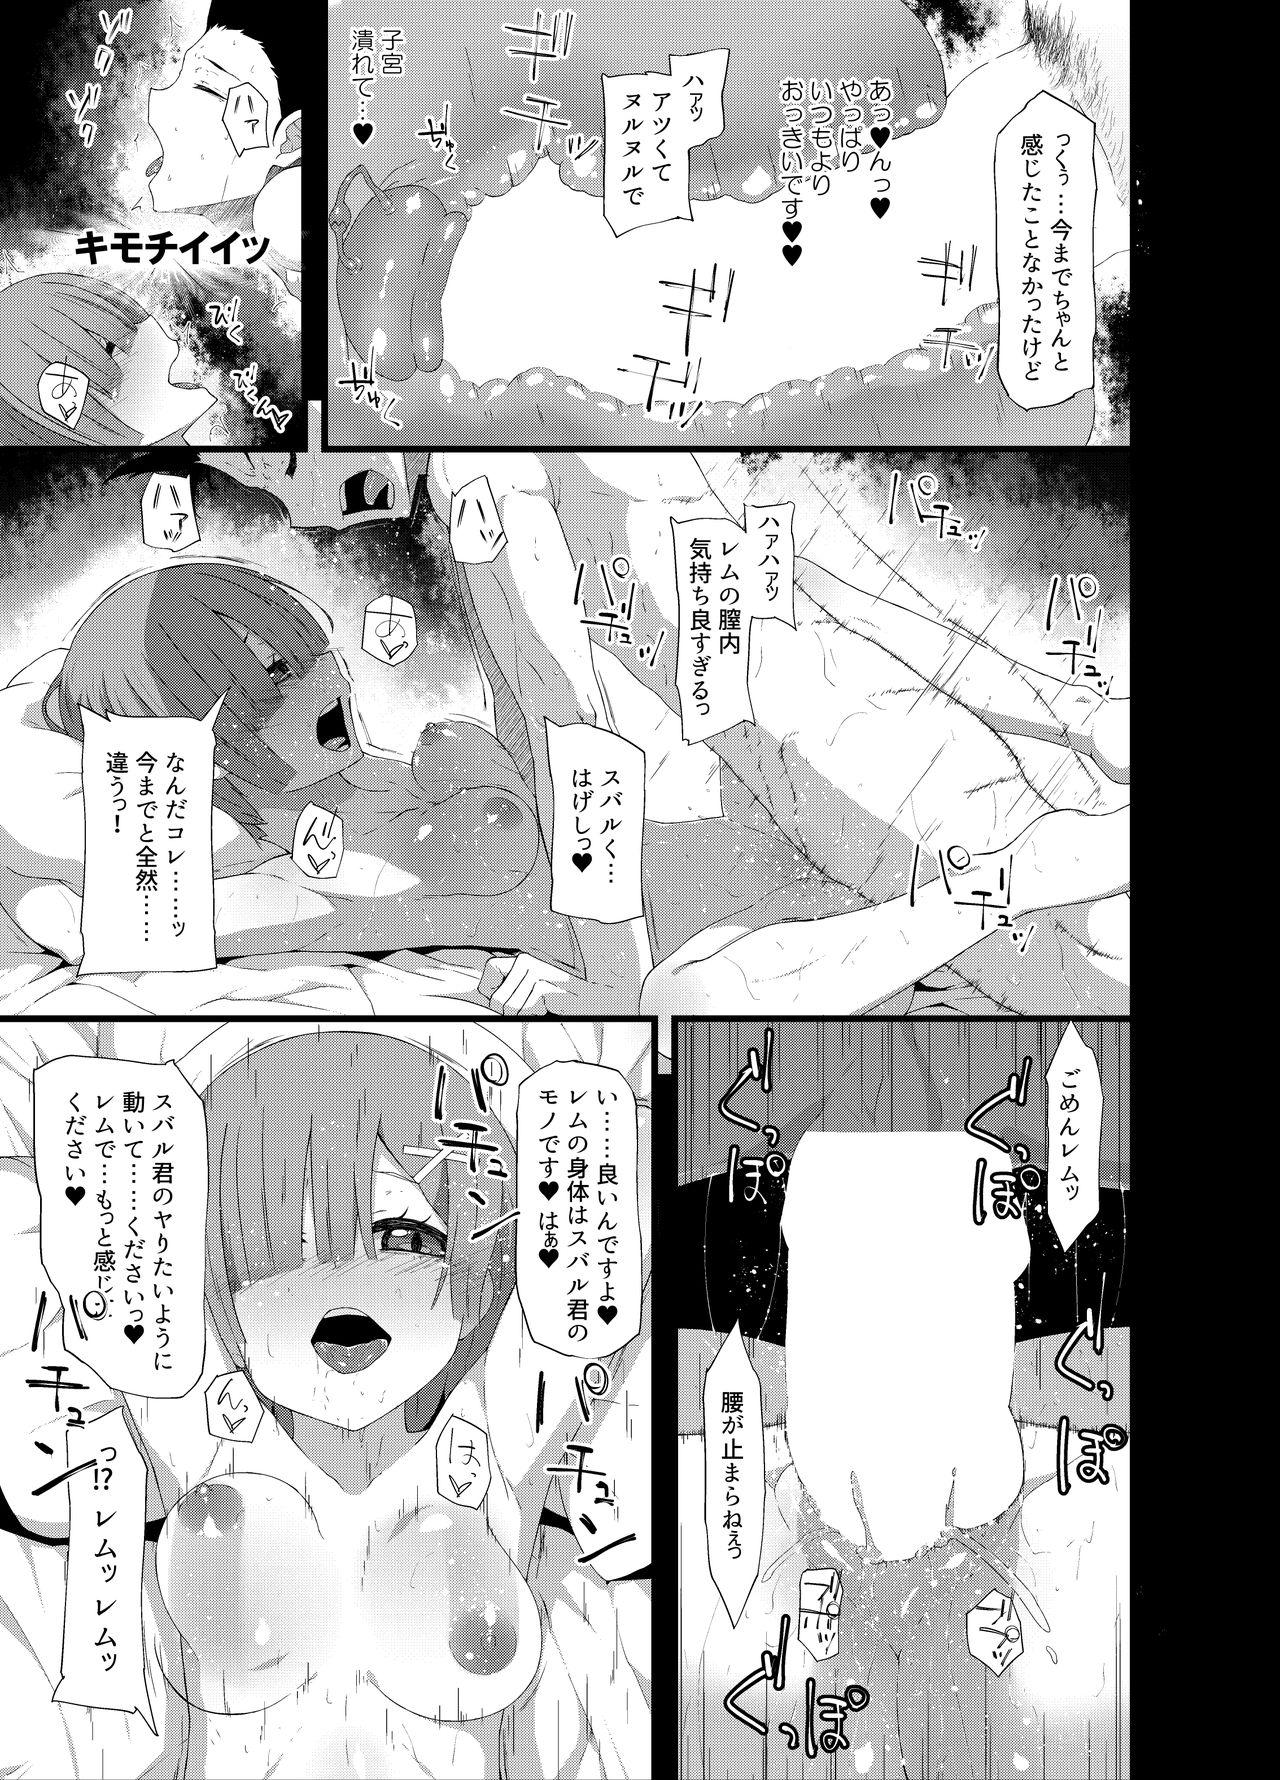 Casada Natsuki Rem - Re zero kara hajimeru isekai seikatsu Tattoos - Page 11